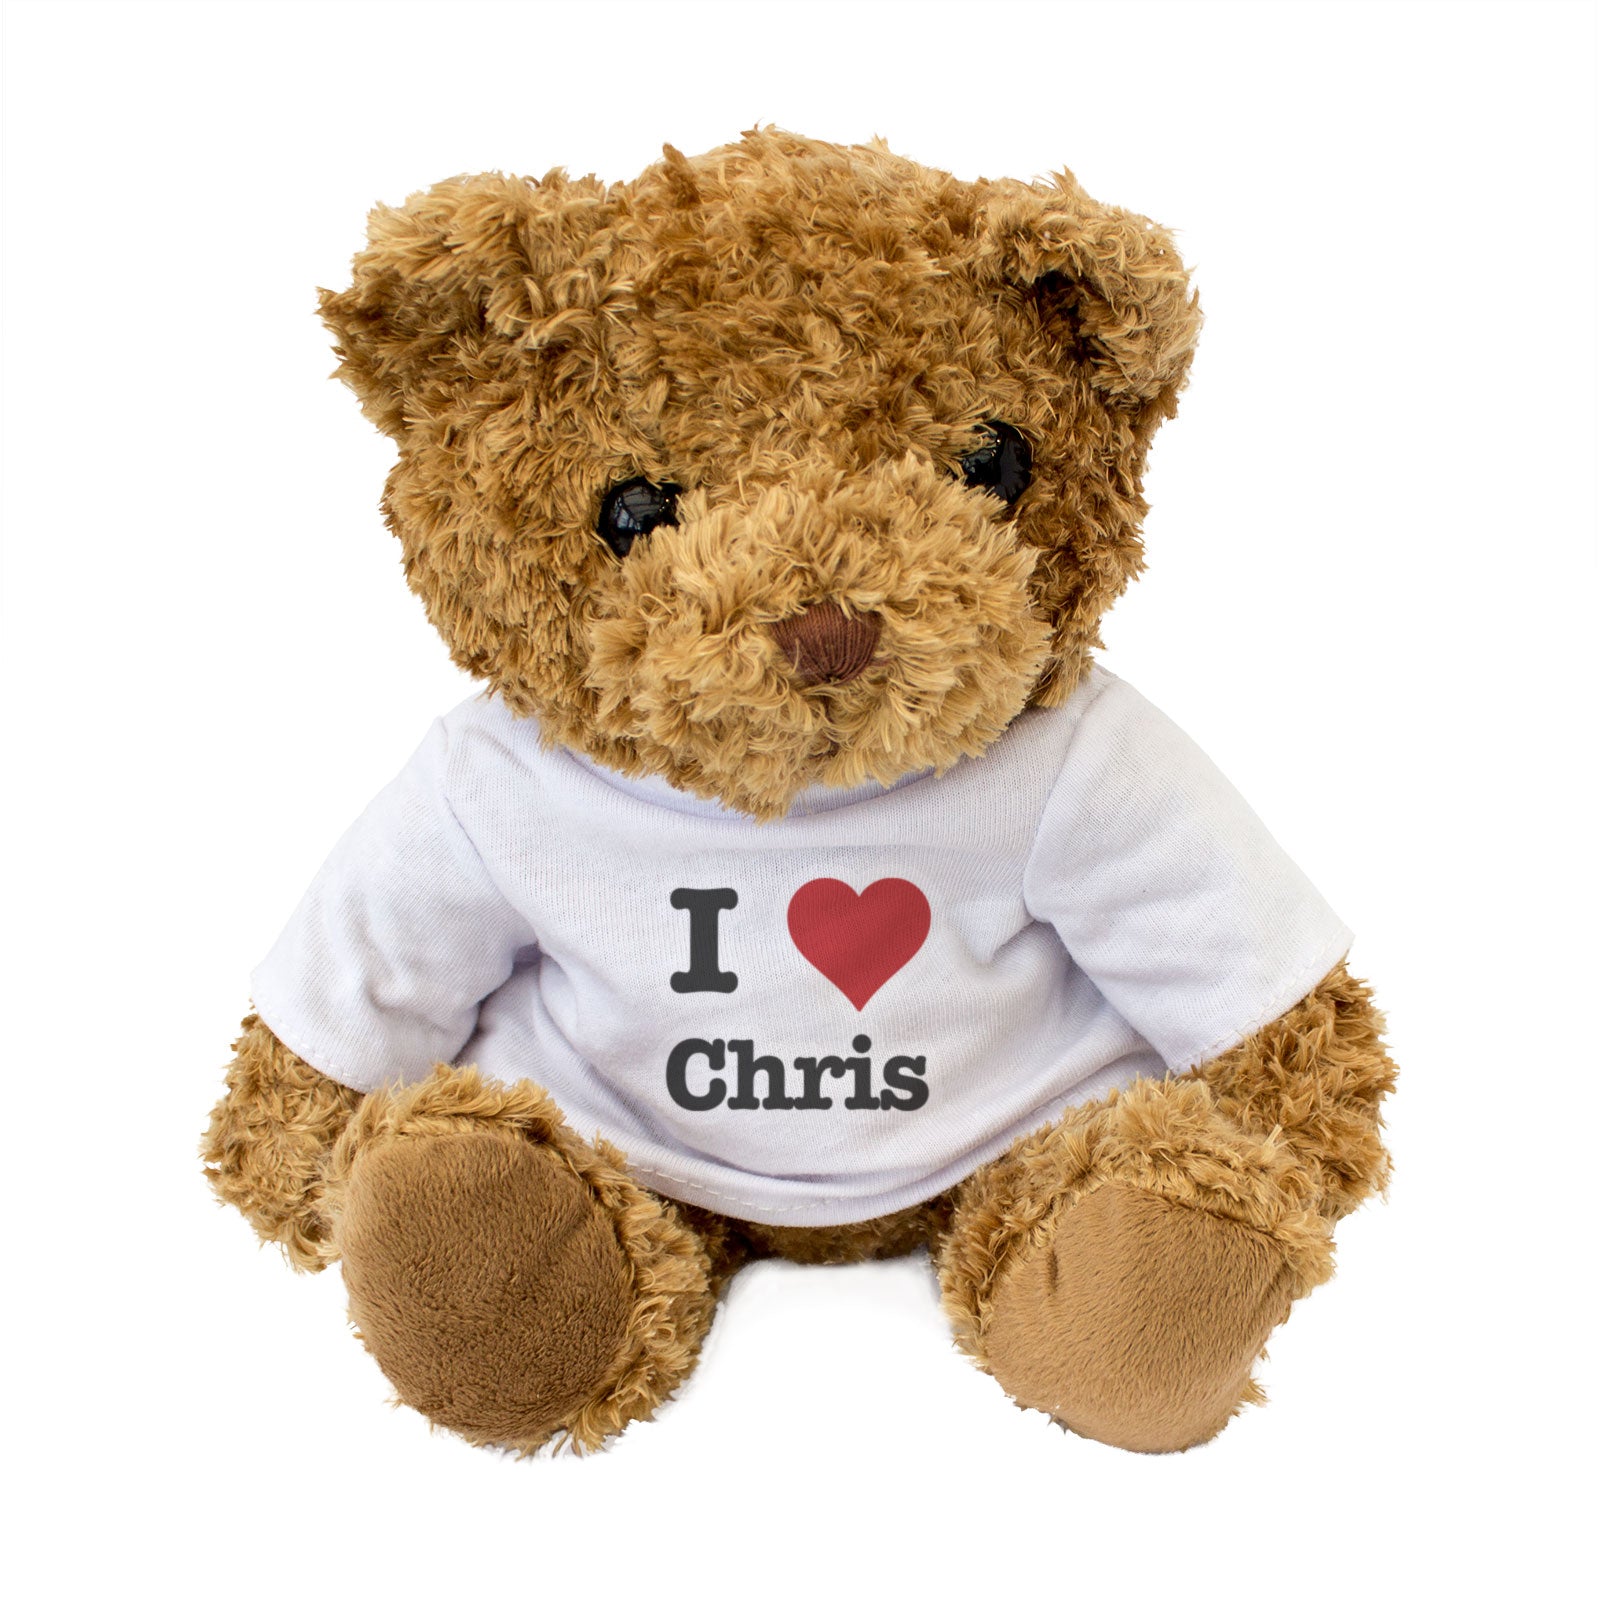 I Love Chris - Teddy Bear